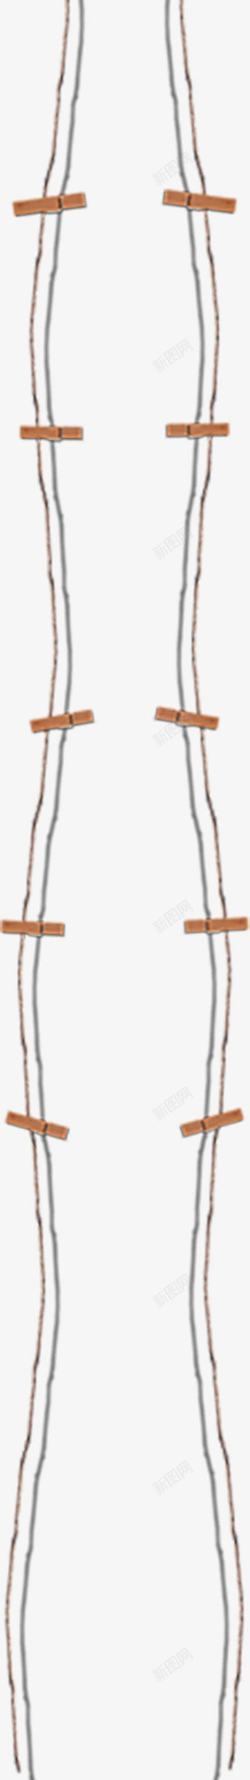 麻绳吊绳木夹子素材